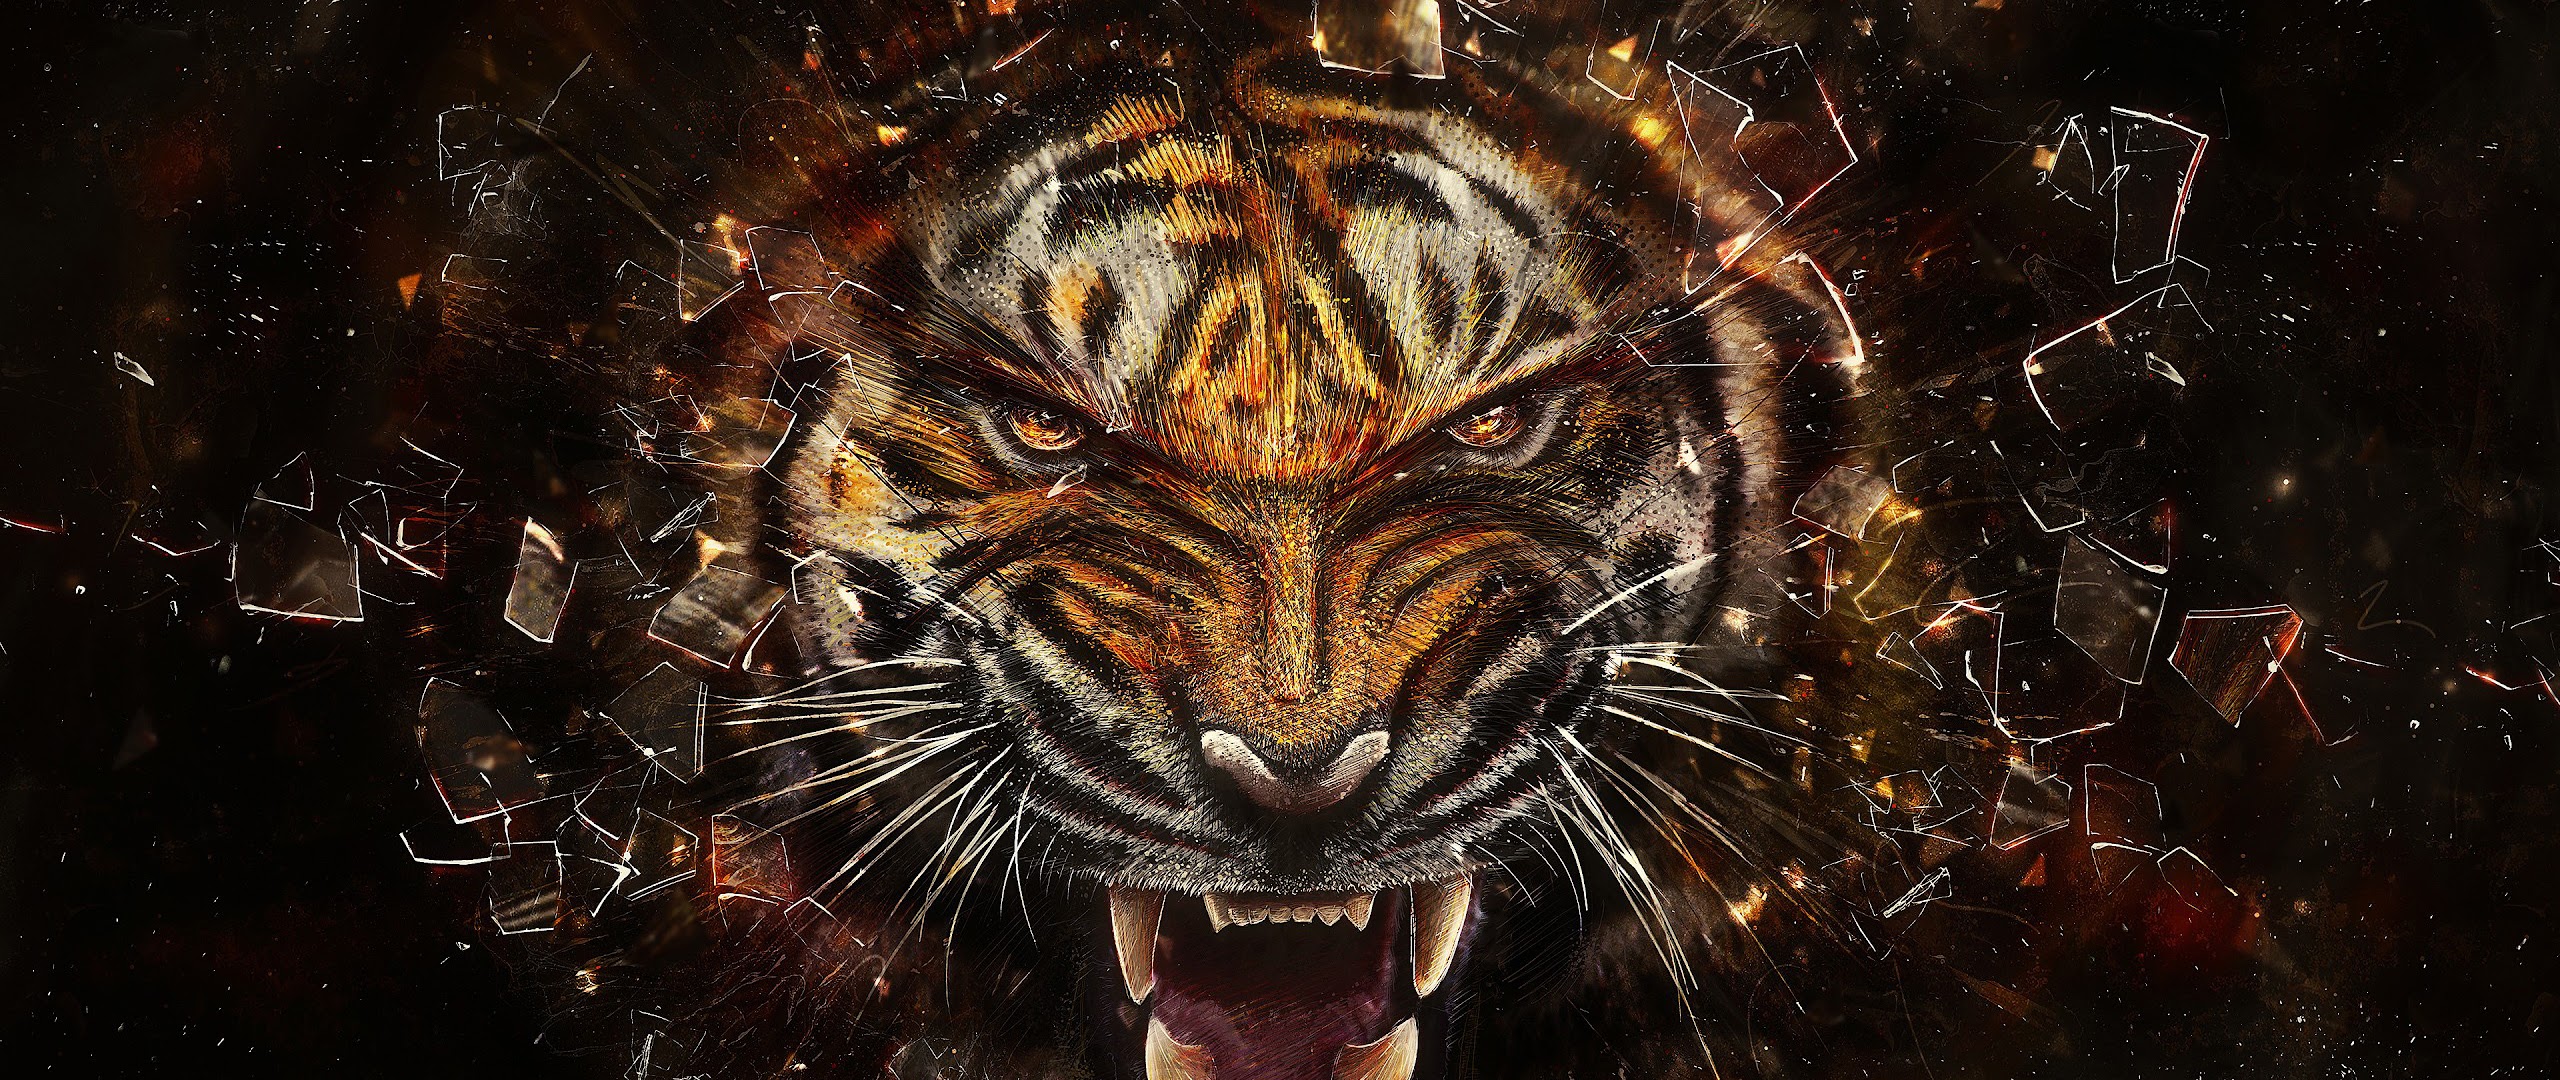 Tiger Growl 4k Wallpaper